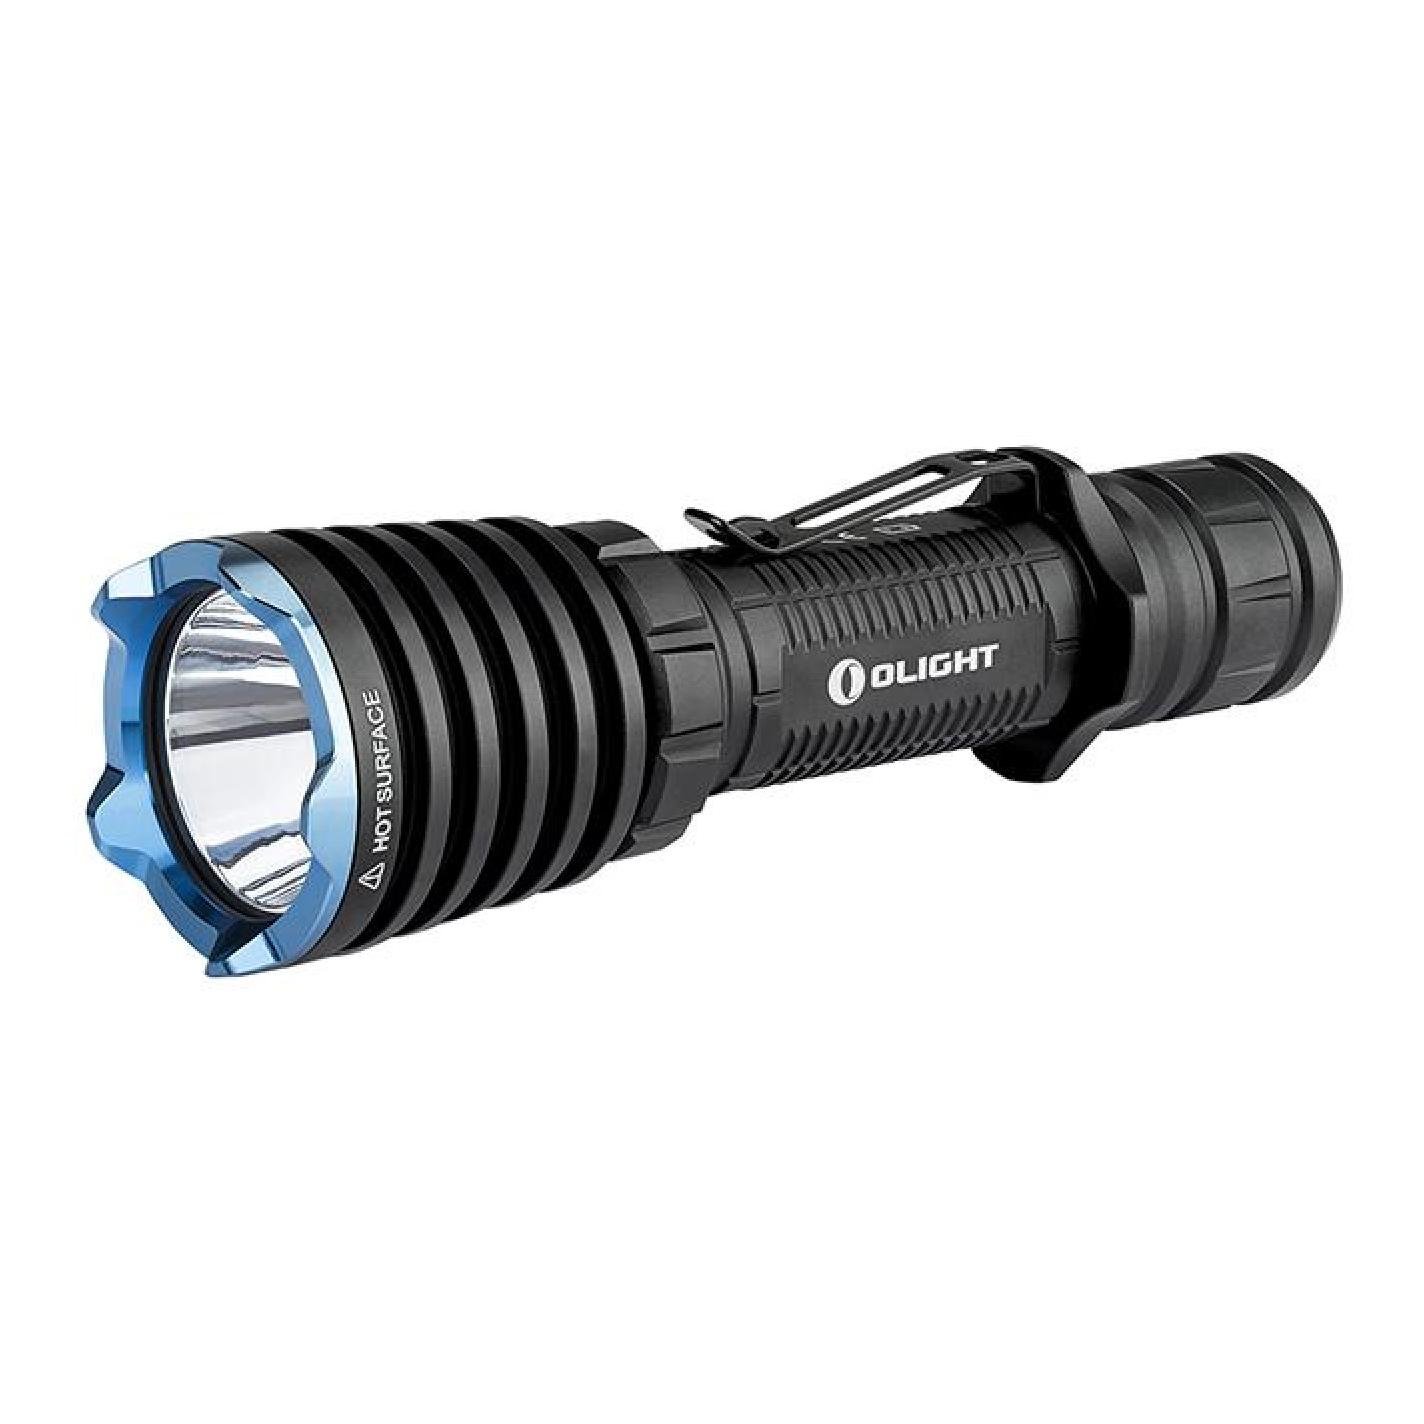 Image of Olight Warrior X LED Taschenlampe - Schwarz bei Hauptner.ch